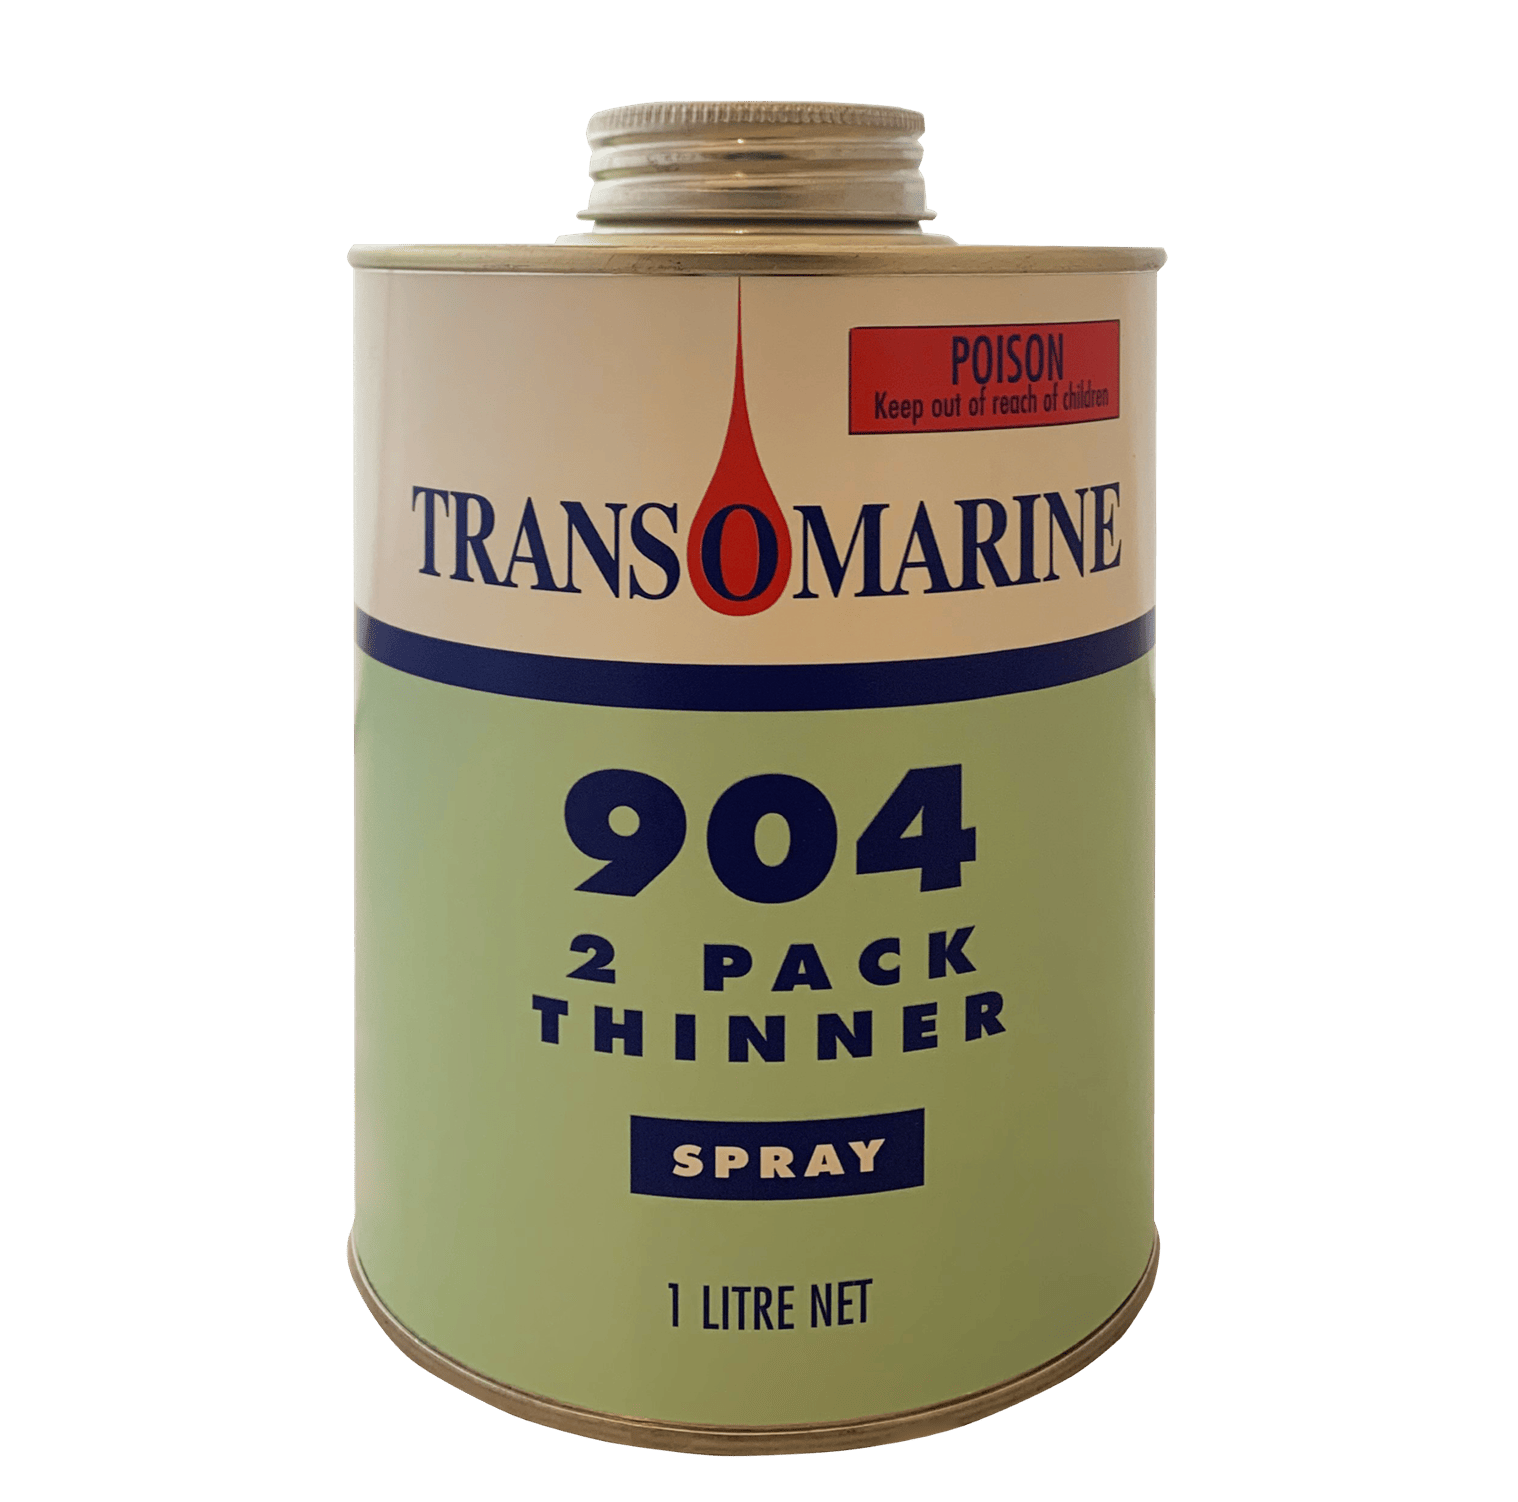 Transomarine 904 Thinners